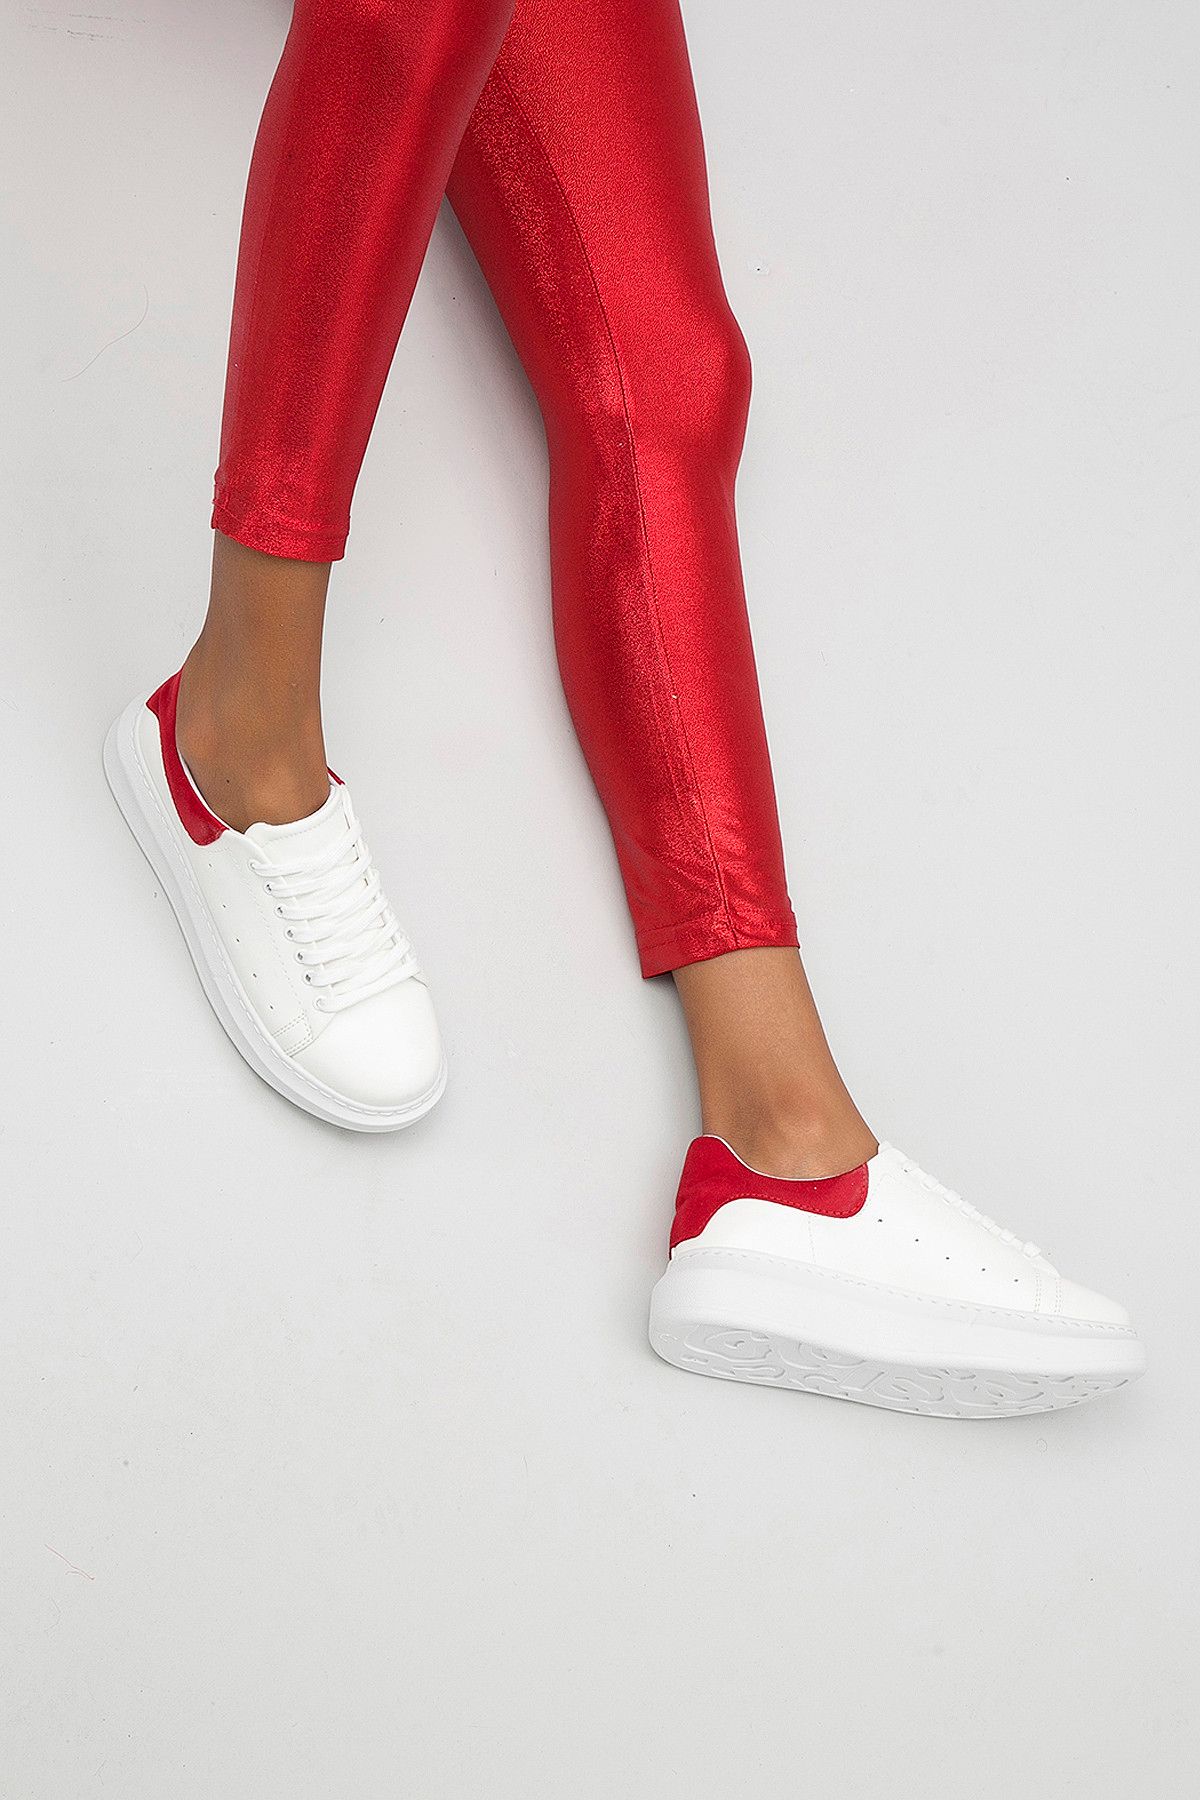 Y-London Beyaz Kırmızı Kadın Spor Ayakkabı 569-8-101